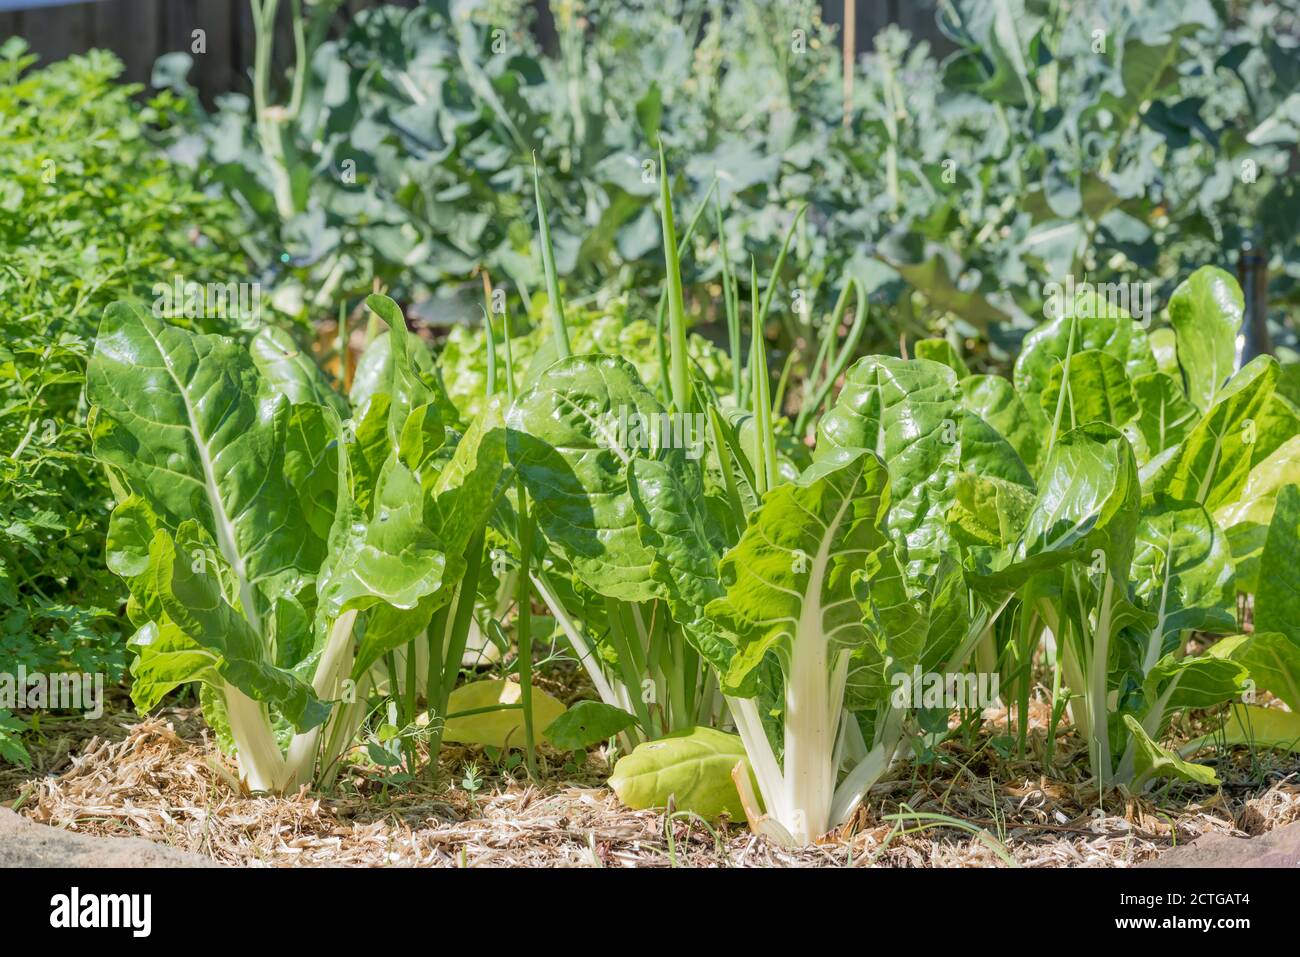 Silberrüben, Mangold oder Seekale-Rüben (Beta vulgaris), Vordergrundkale und Russischer Kale (Brassica napus va pabularia) in einem Gemüsebeet in Sydney Stockfoto